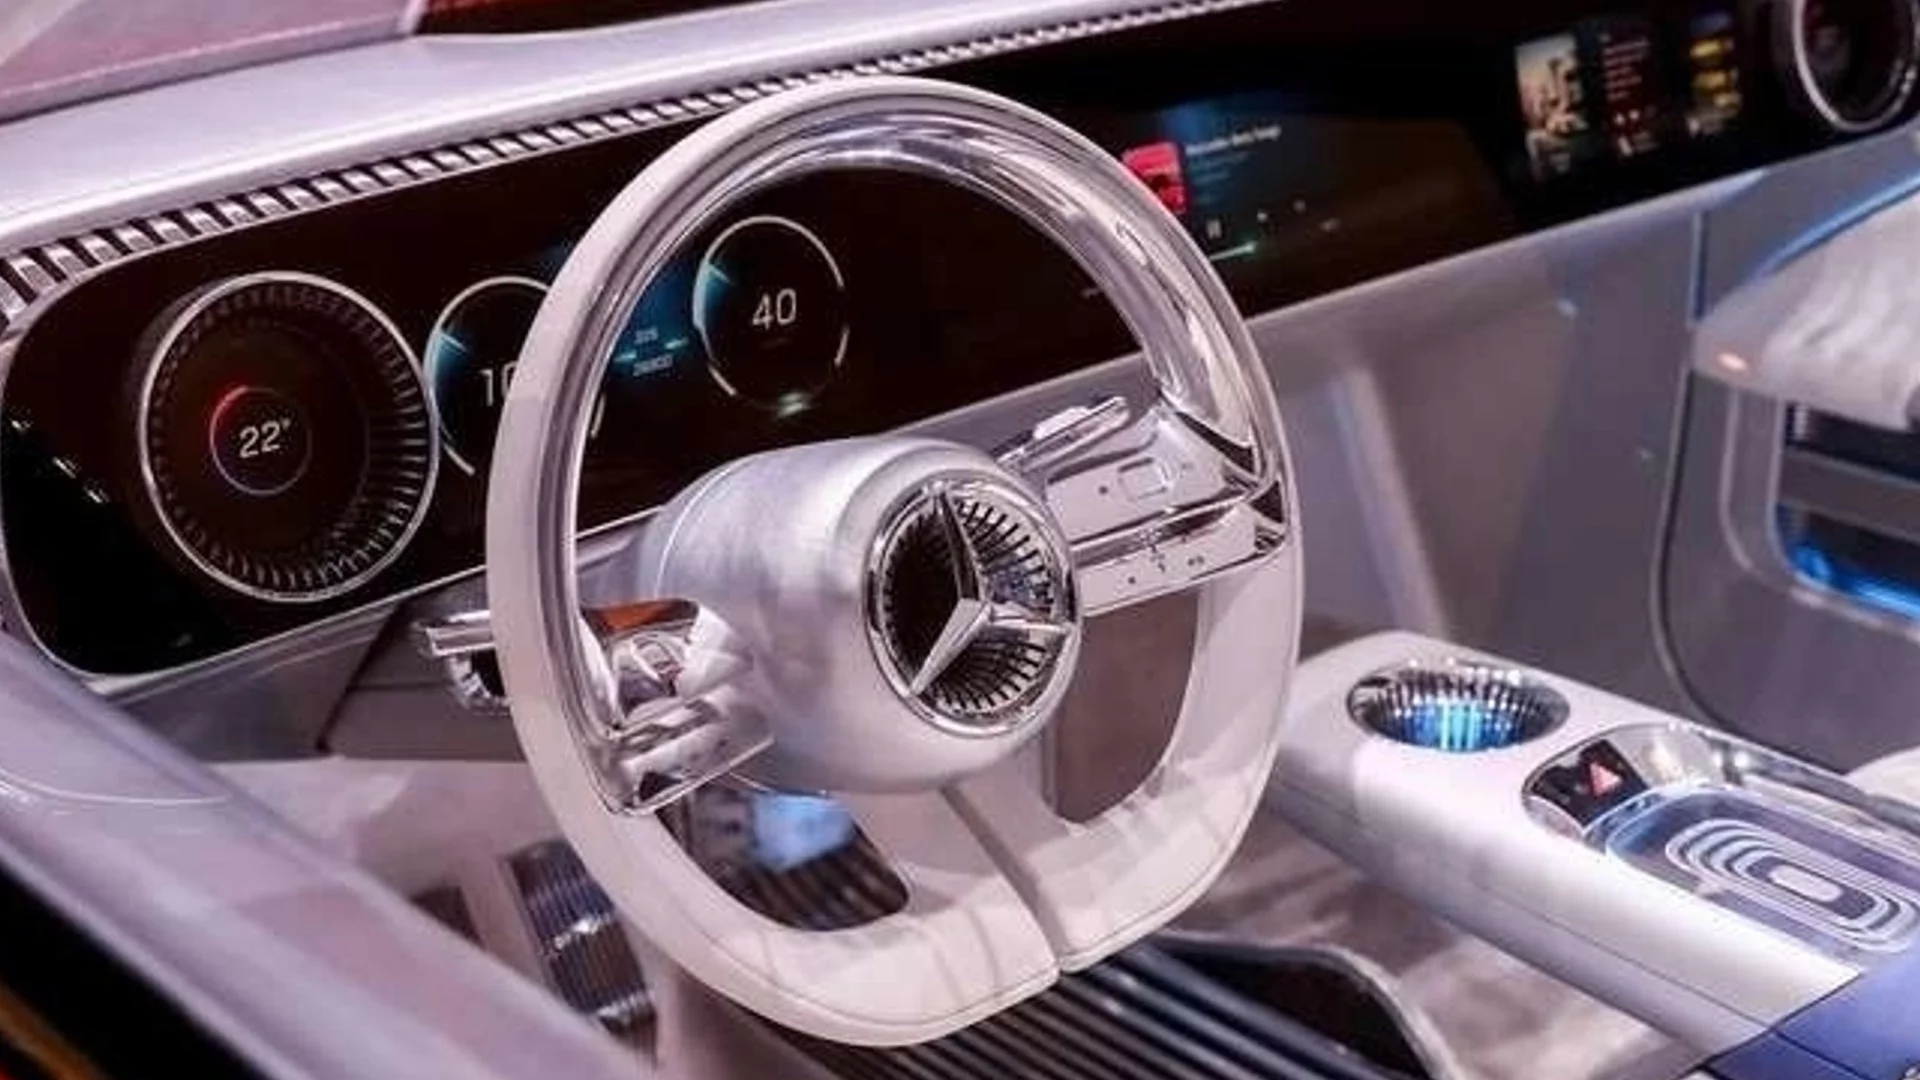 Китайски технологии ще помагат на Mercedes-Benz да изпревари конкурентите